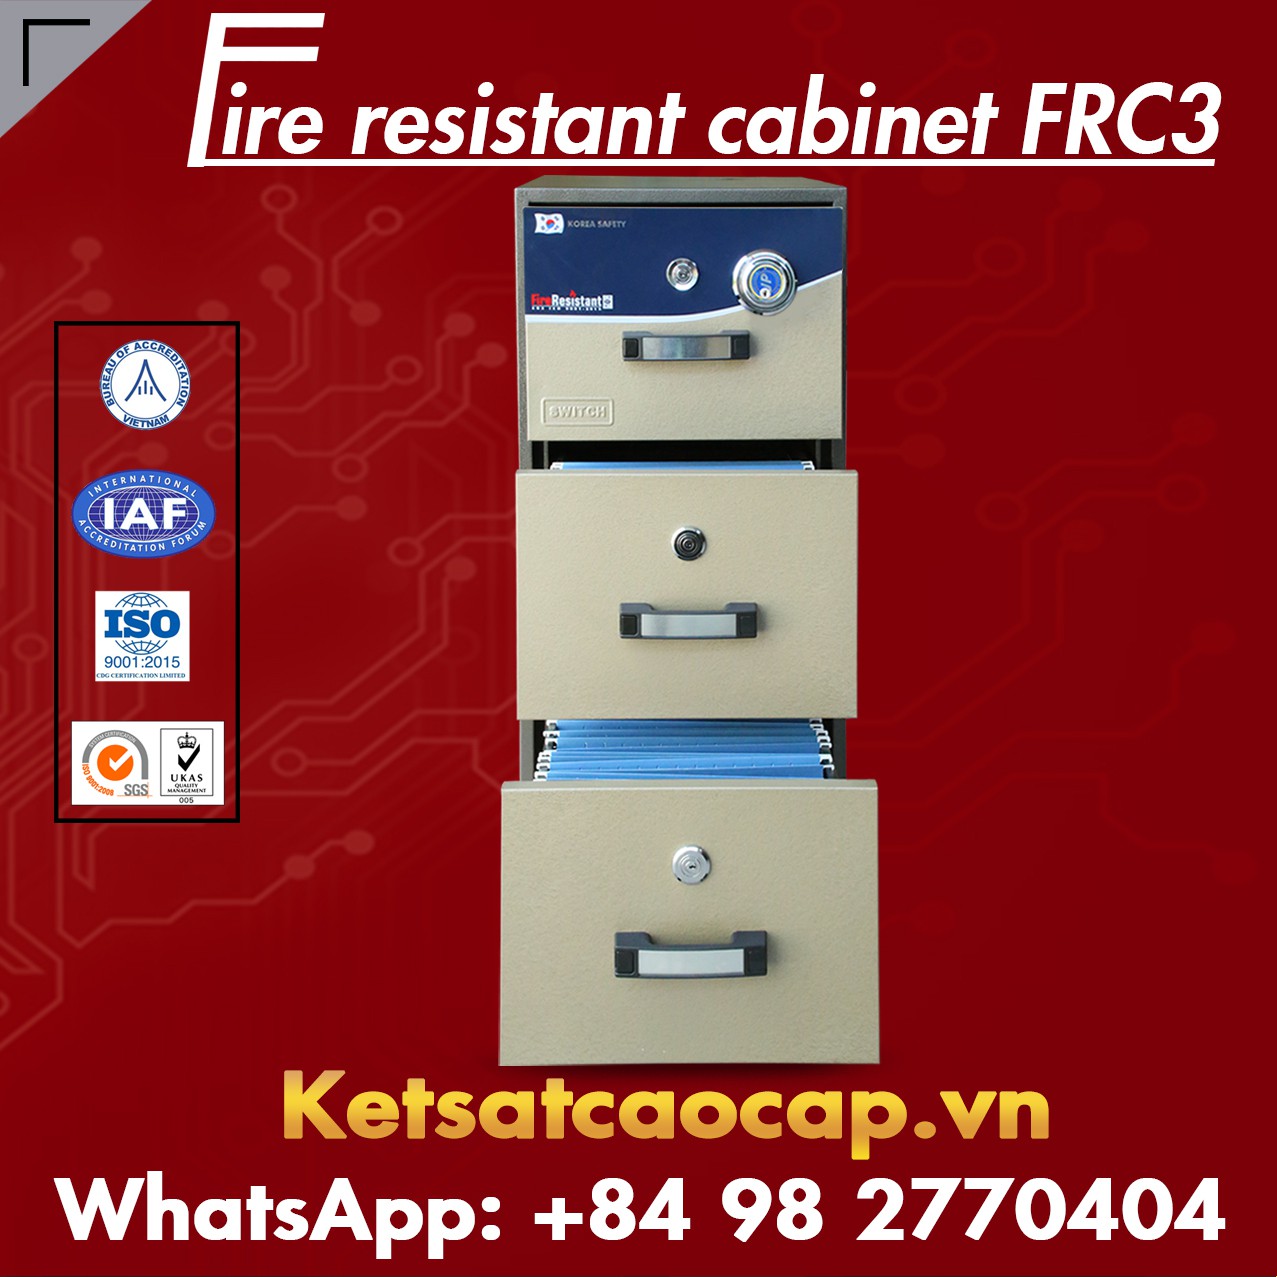 hình ảnh sản phẩm Tủ Sắt Chống Cháy KOREA FRC3 DK Brown